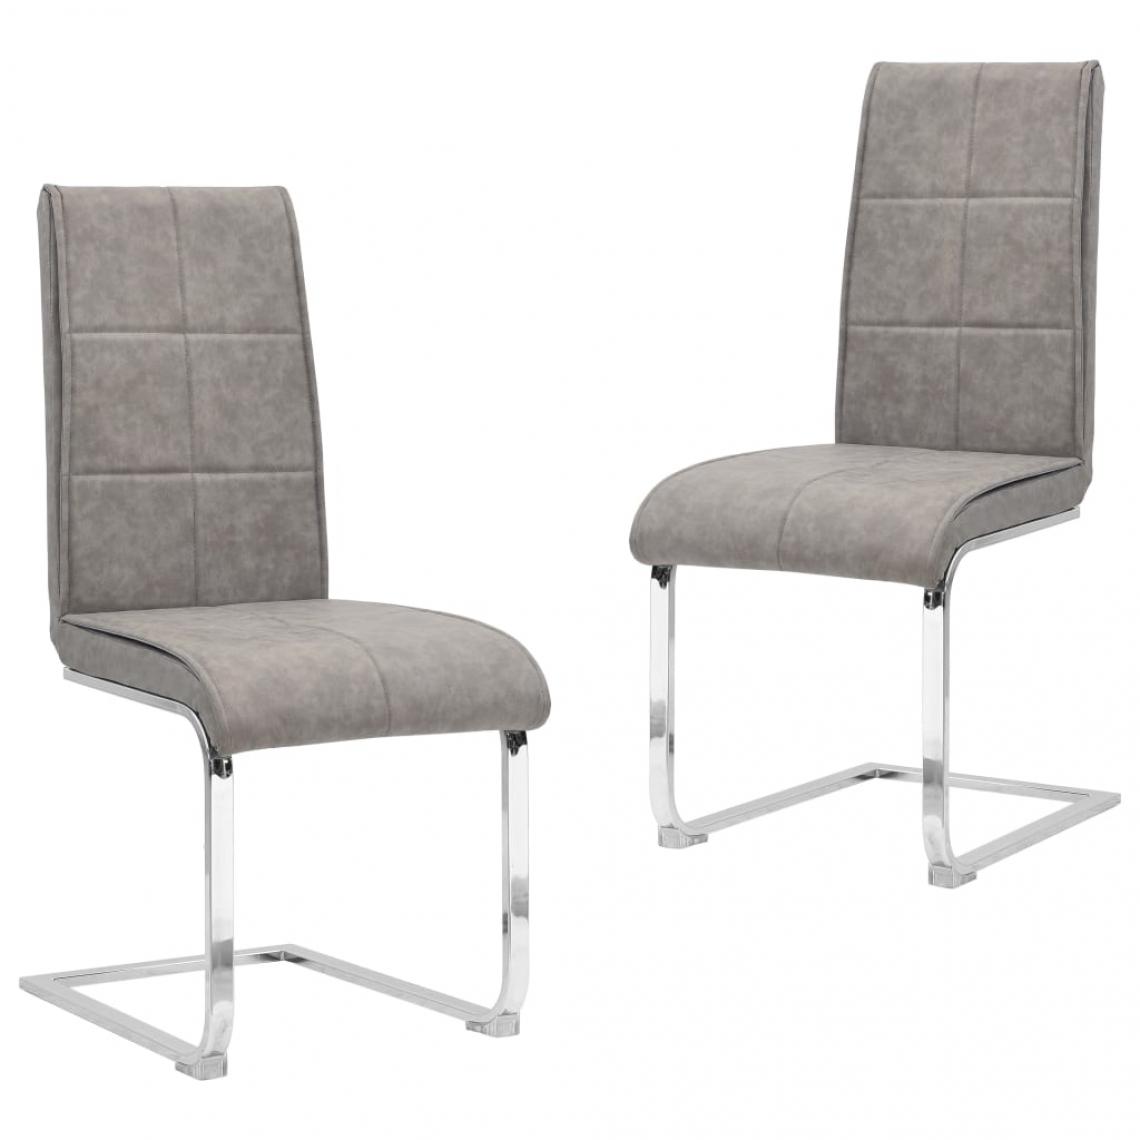 Decoshop26 - Lot de 2 chaises de salle à manger cuisine cantilever design moderne similicuir gris clair CDS020321 - Chaises